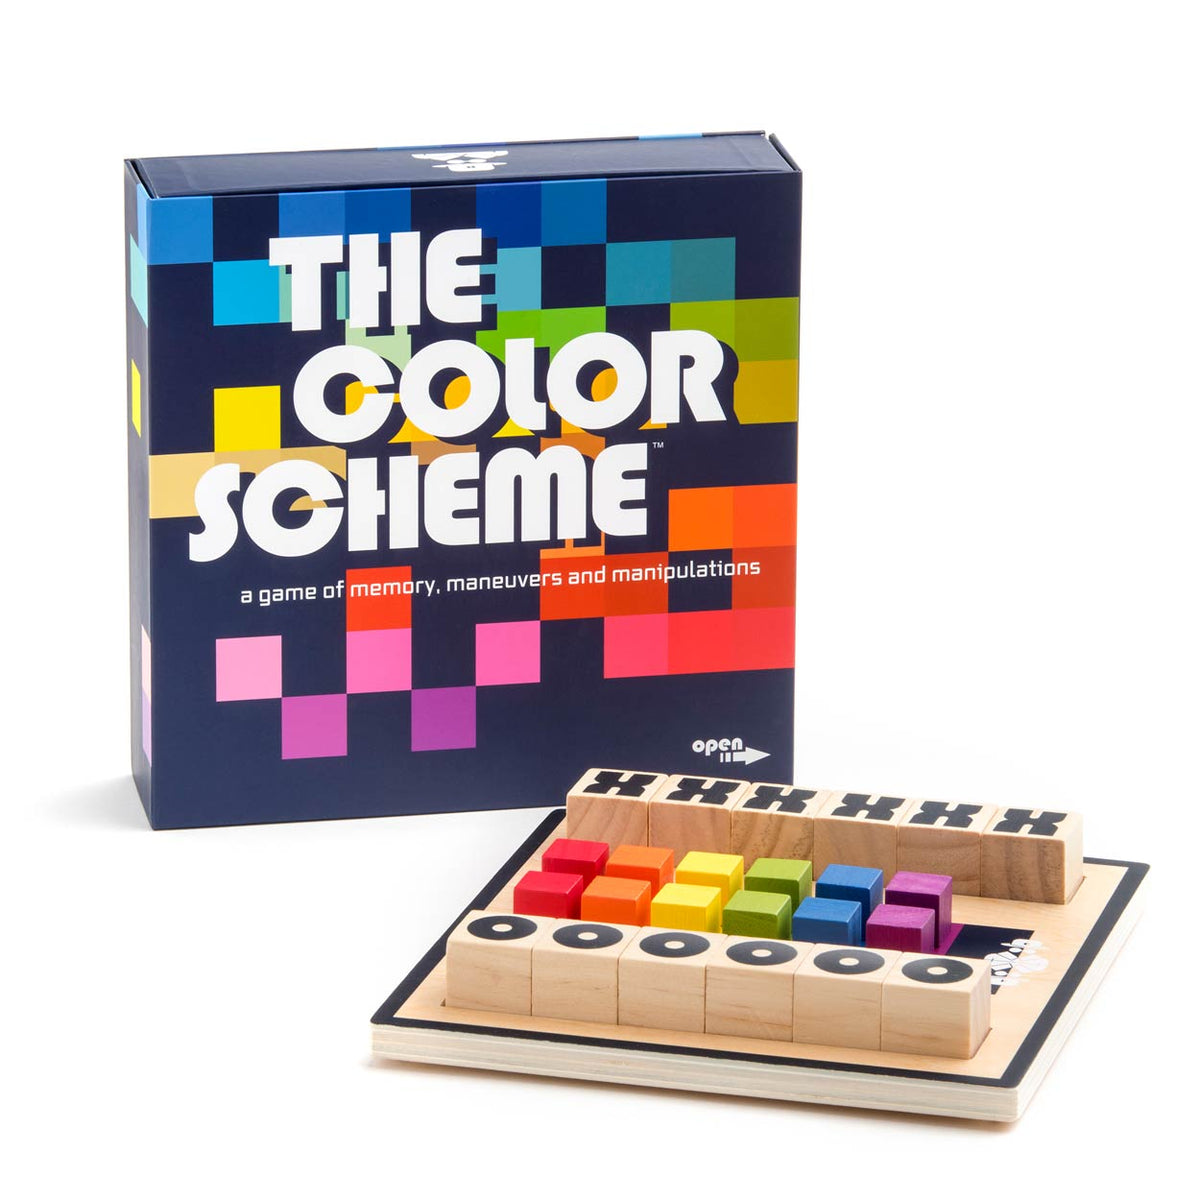 The Color Scheme